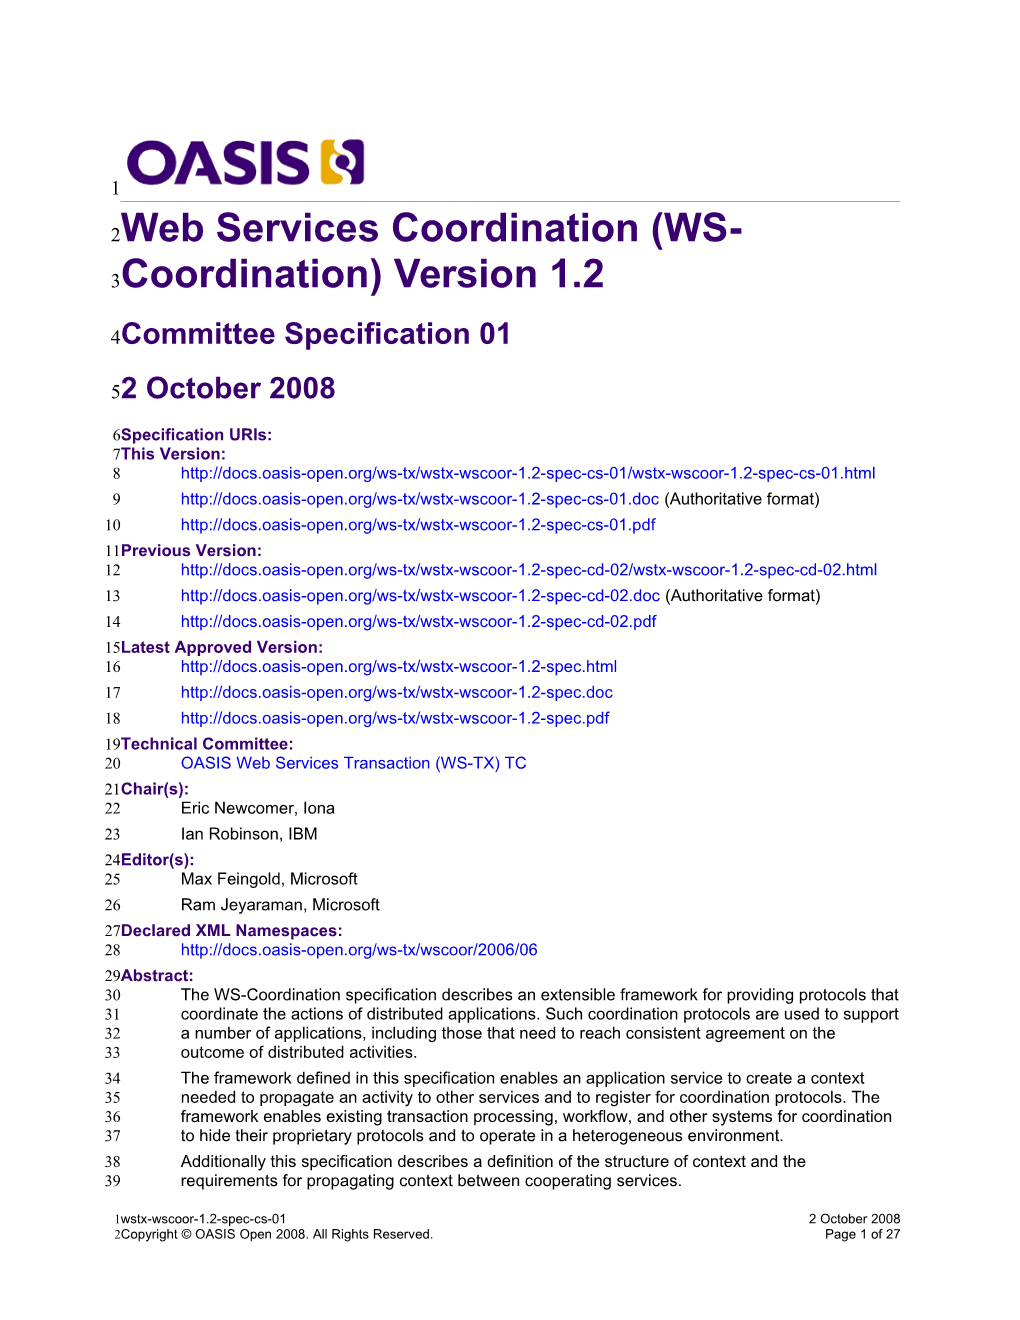 Web Services Coordination(WS-Coordination) Version 1.2